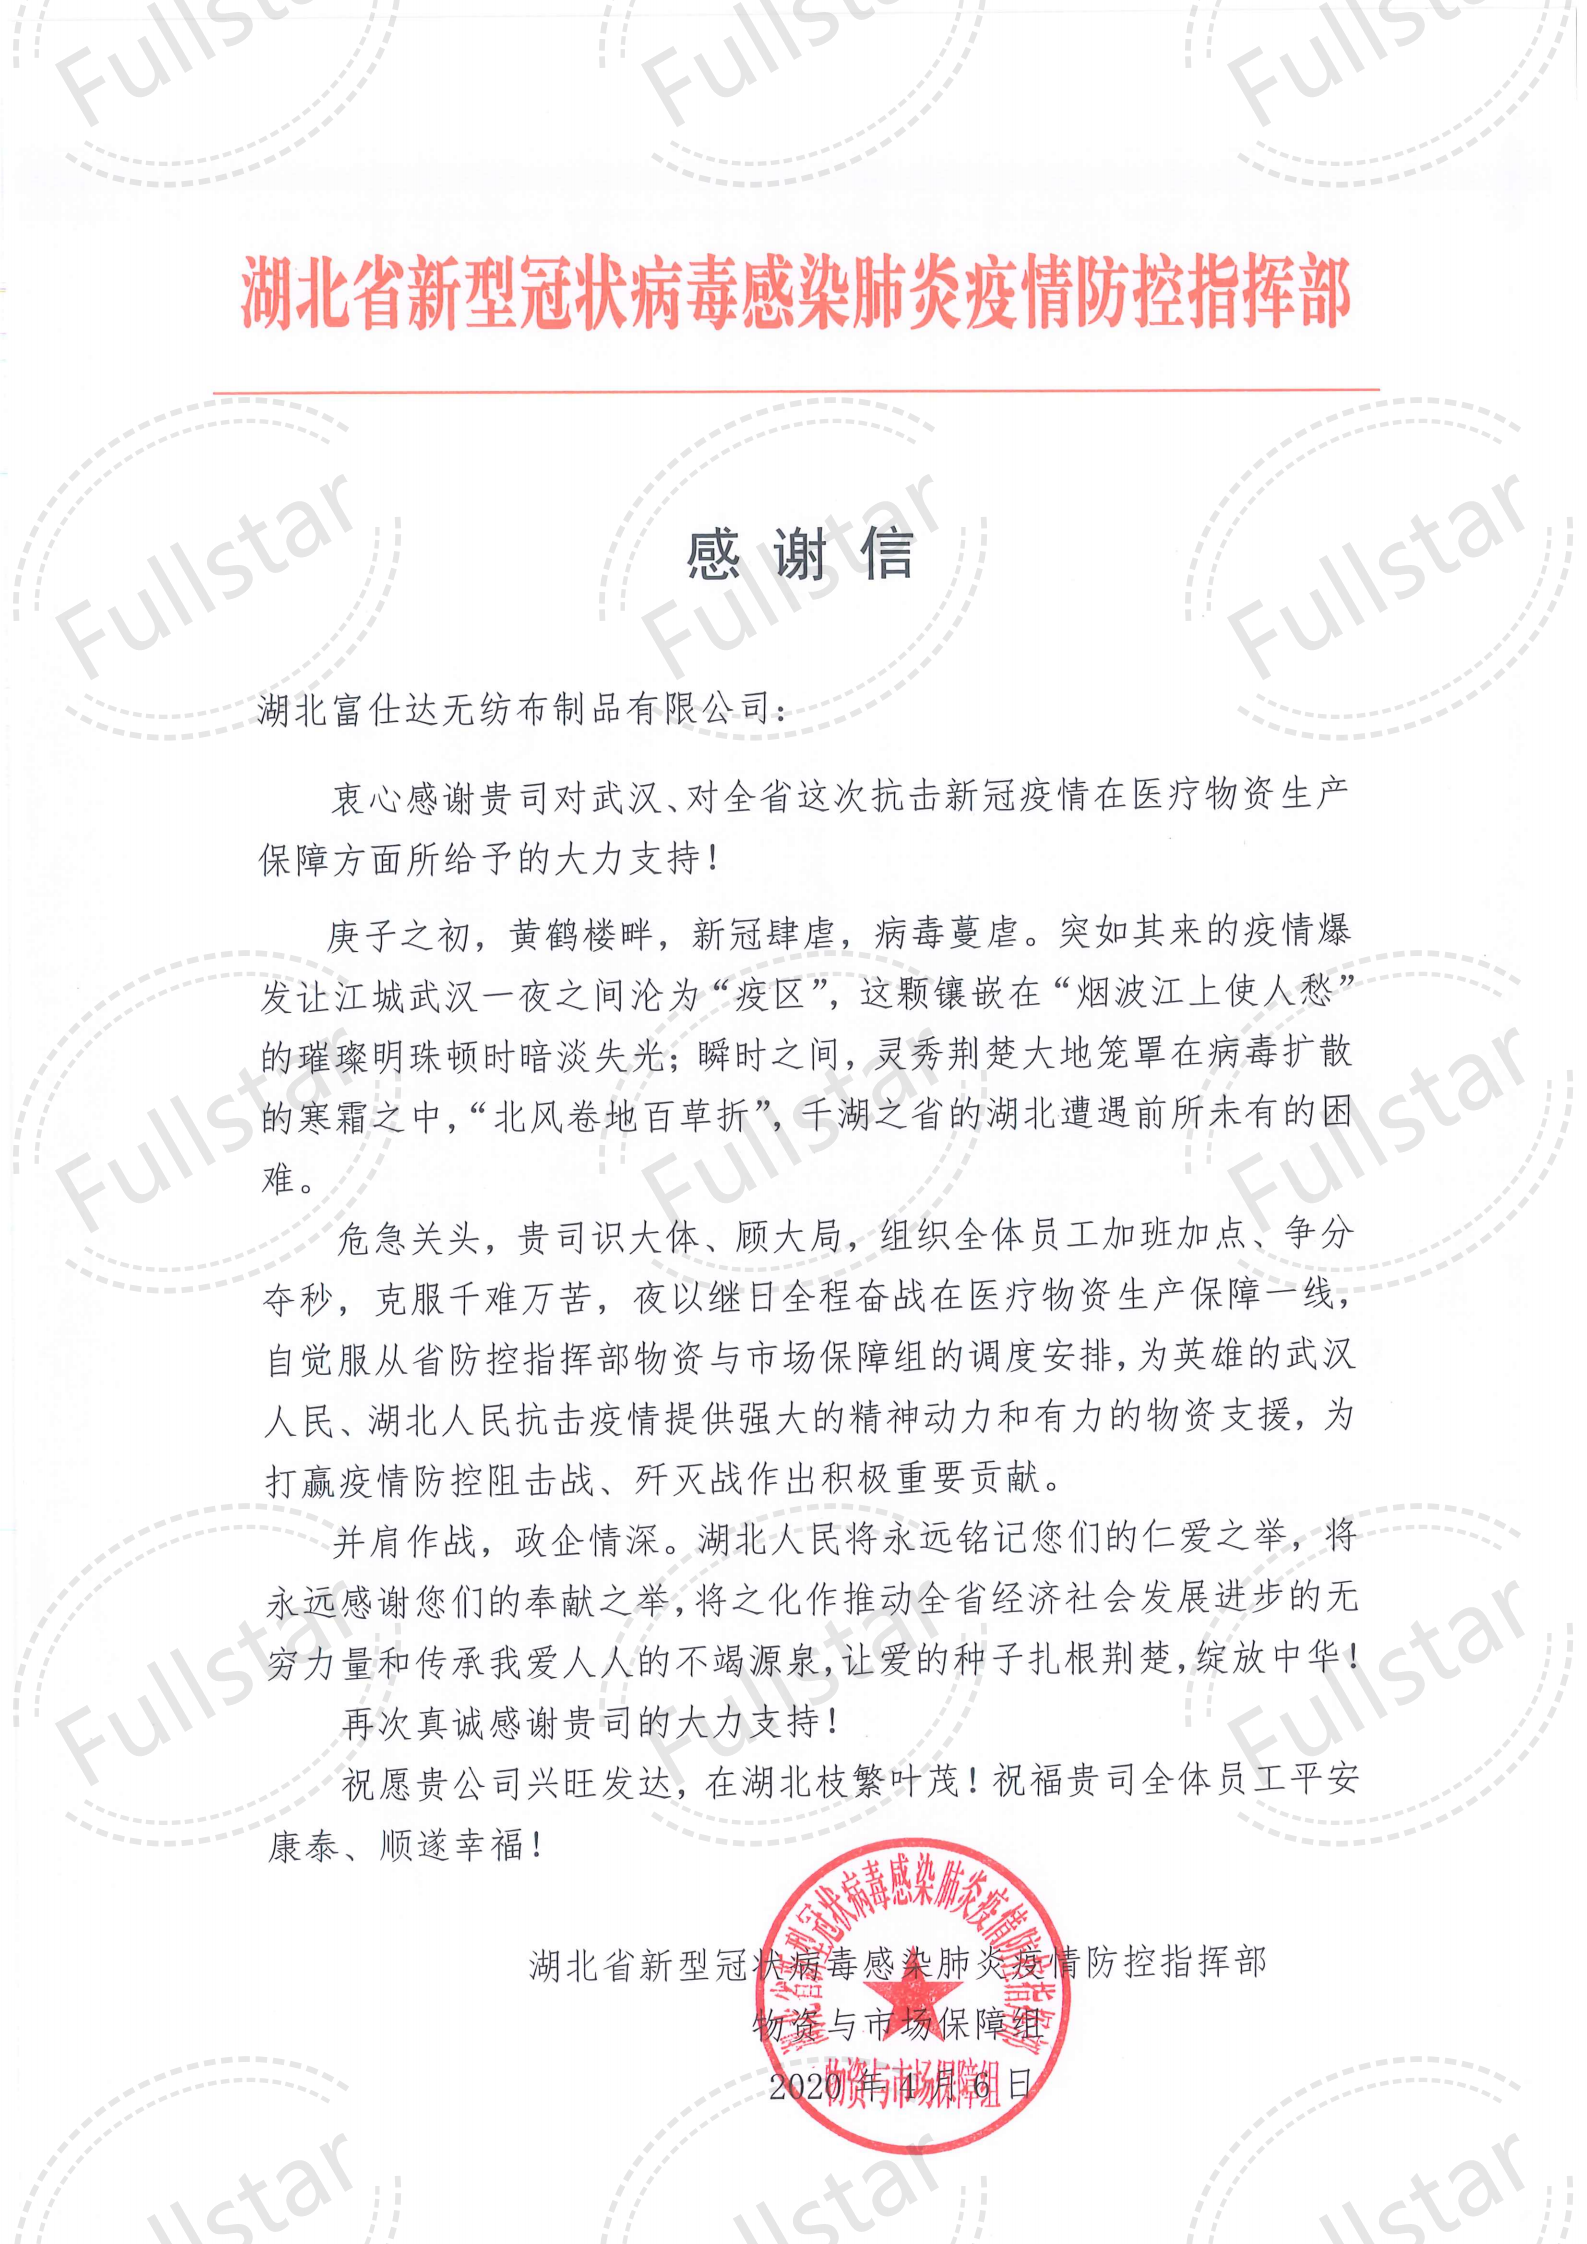 (Hubei Fushida Nonwovens Company) Dankbrief van Hubei Provinciaal Commando voor Preventie en Controle _00 (1) .png